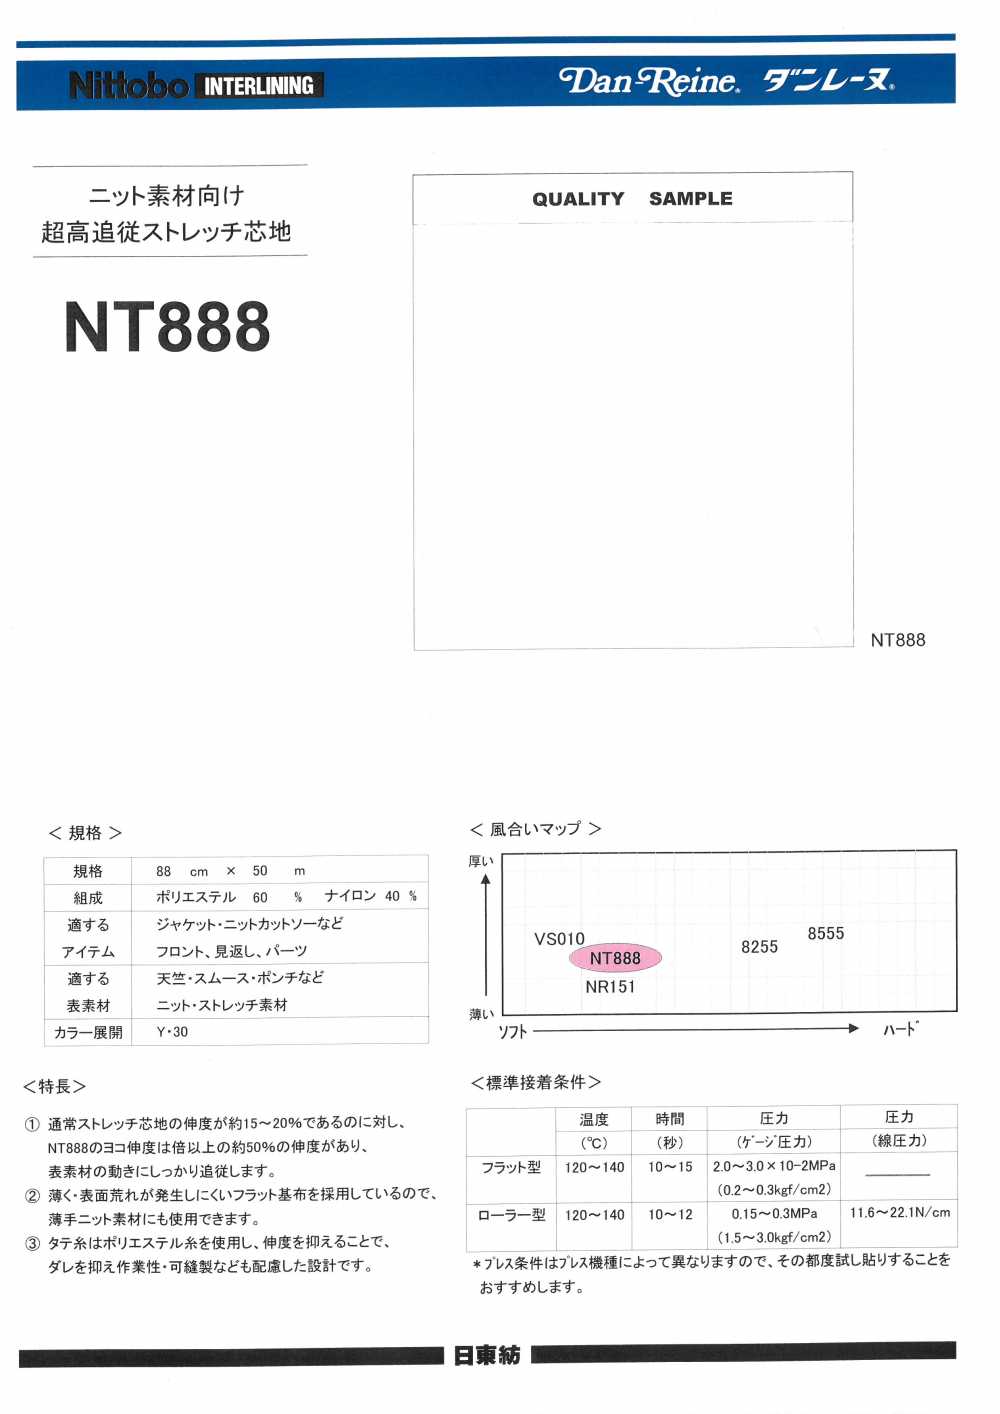 NT888 Estiramiento De Cumplimiento Ultra Alto De Danlaine Que Interlinea 15D Para Materiales De Punto[Entretela] Nittobo